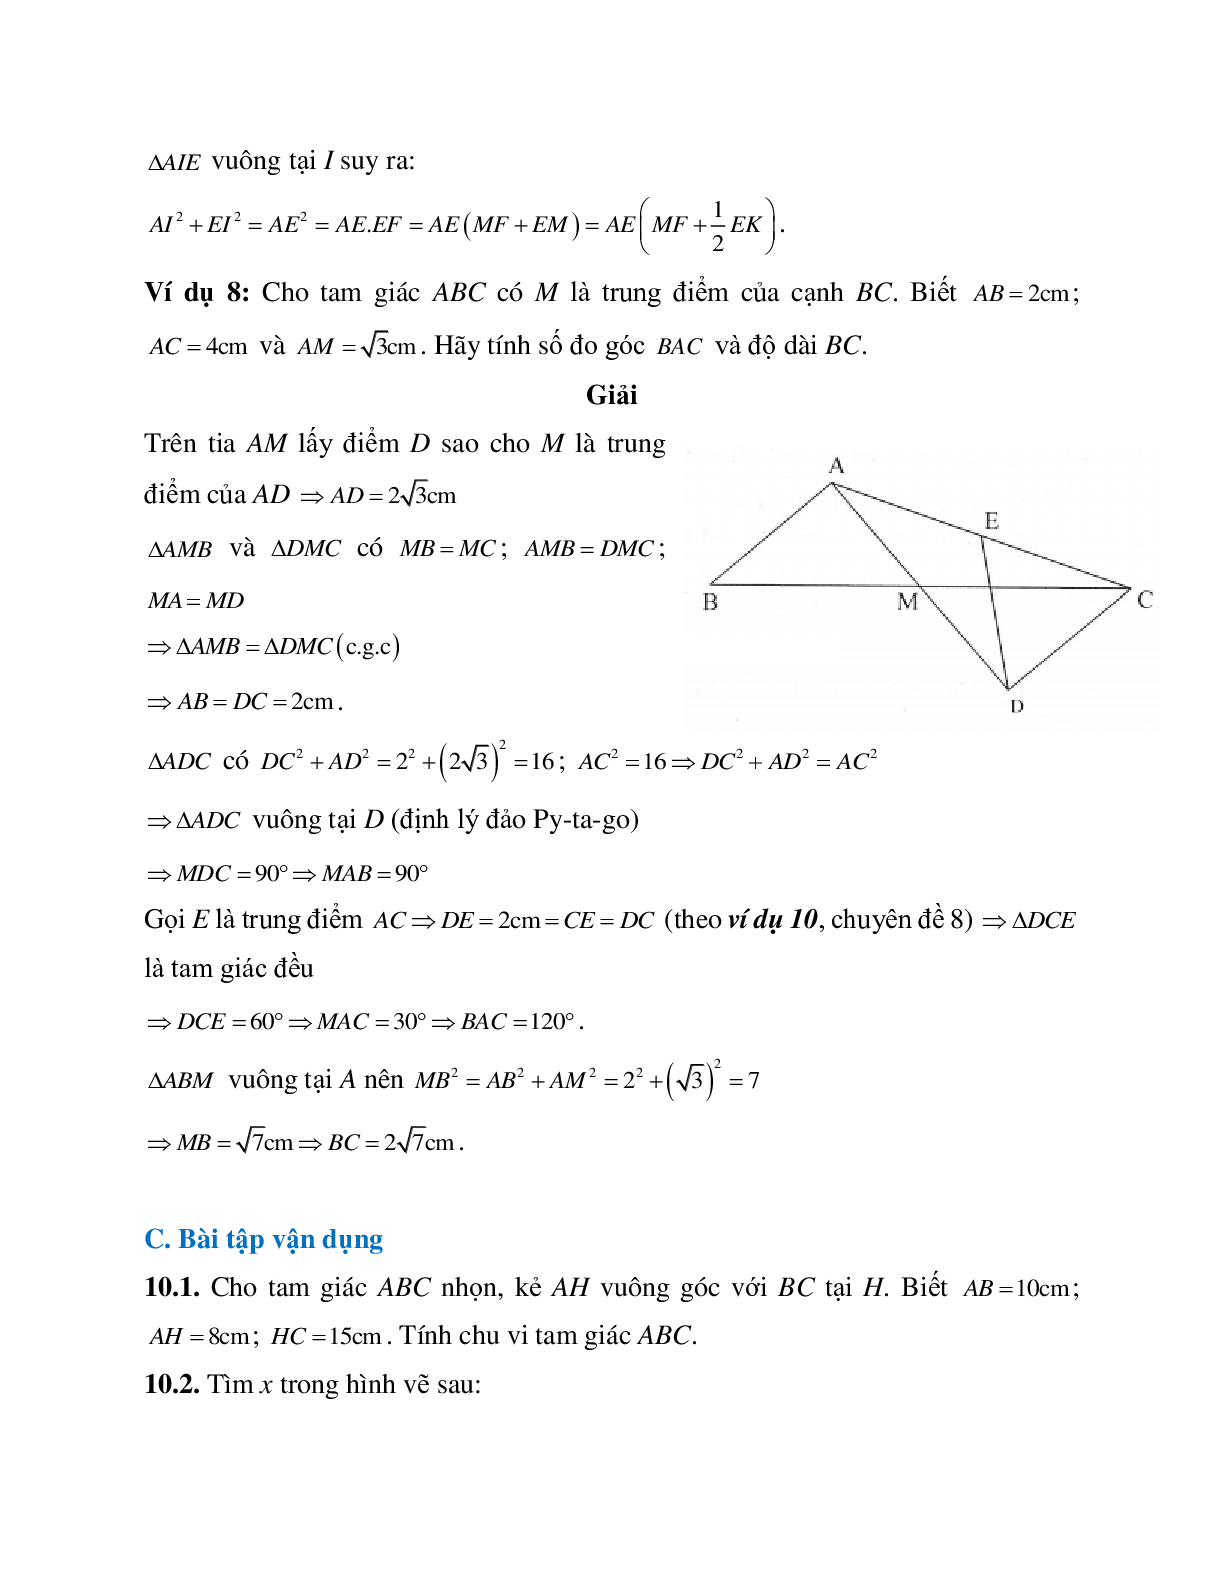 Những bài tập điển hình về Định lý Pi-ta-go trong tam giác vuông có lời giải (trang 8)